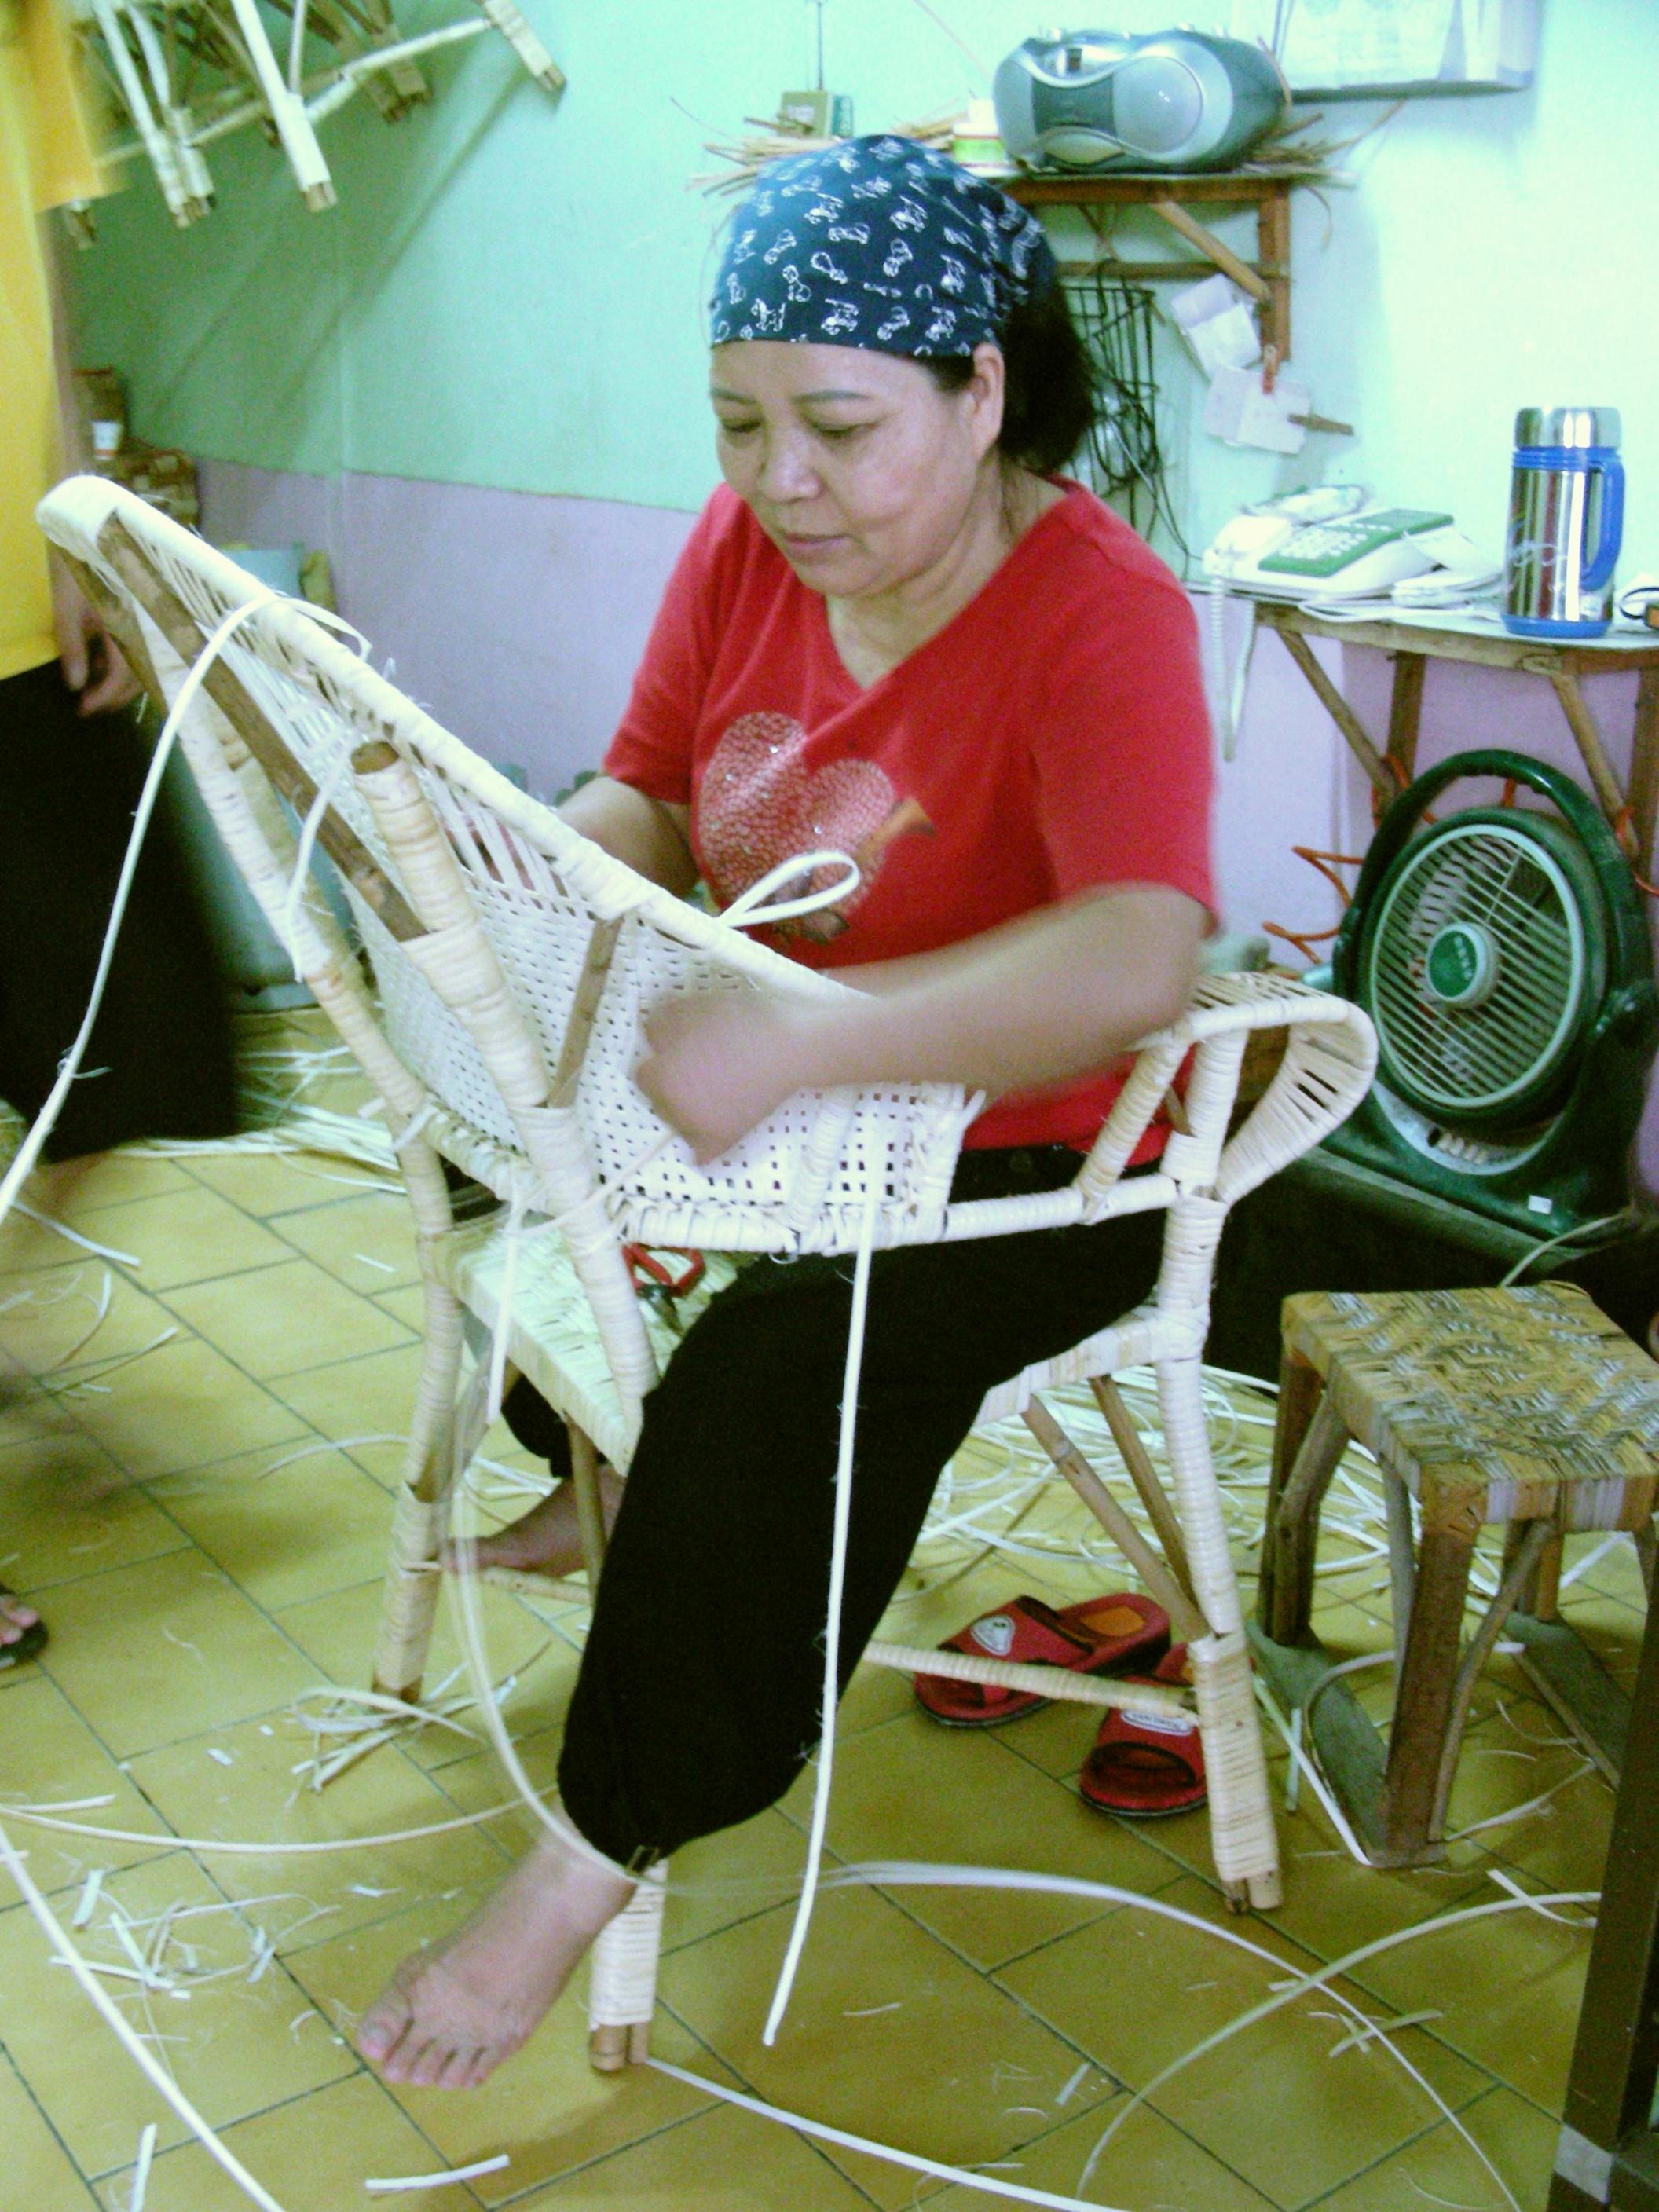 名稱:黃細梅美濃傳統籐椅製造客語拼音:四縣:miˊ nungˇ conˇ tungˋ tenˇ iˋ zii zo